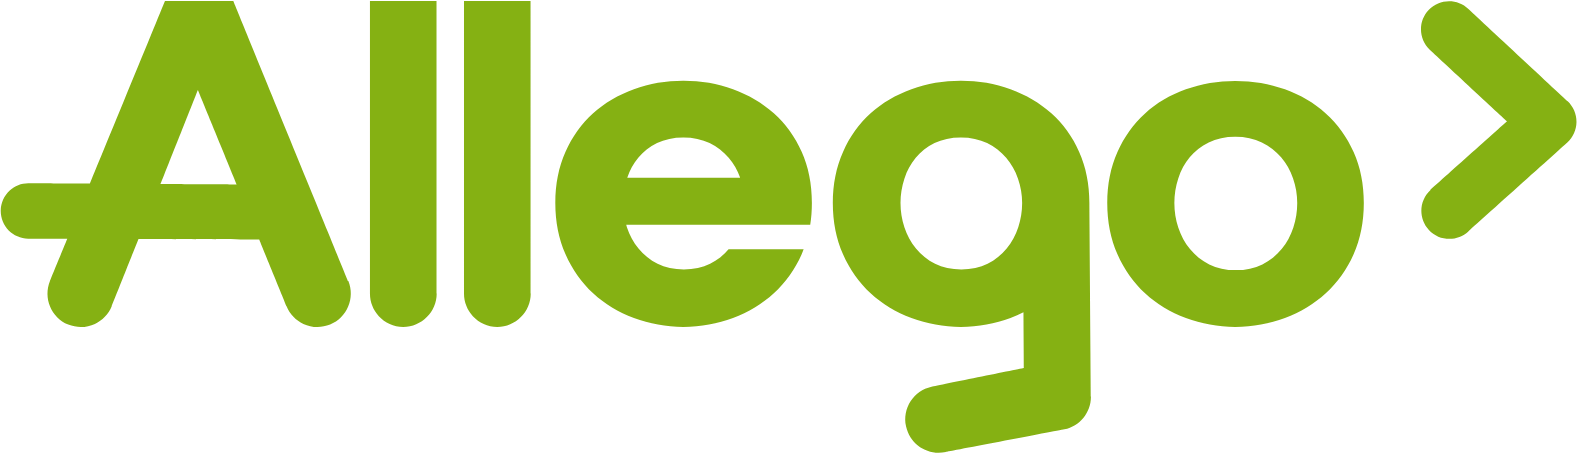 Allego logo large (transparent PNG)